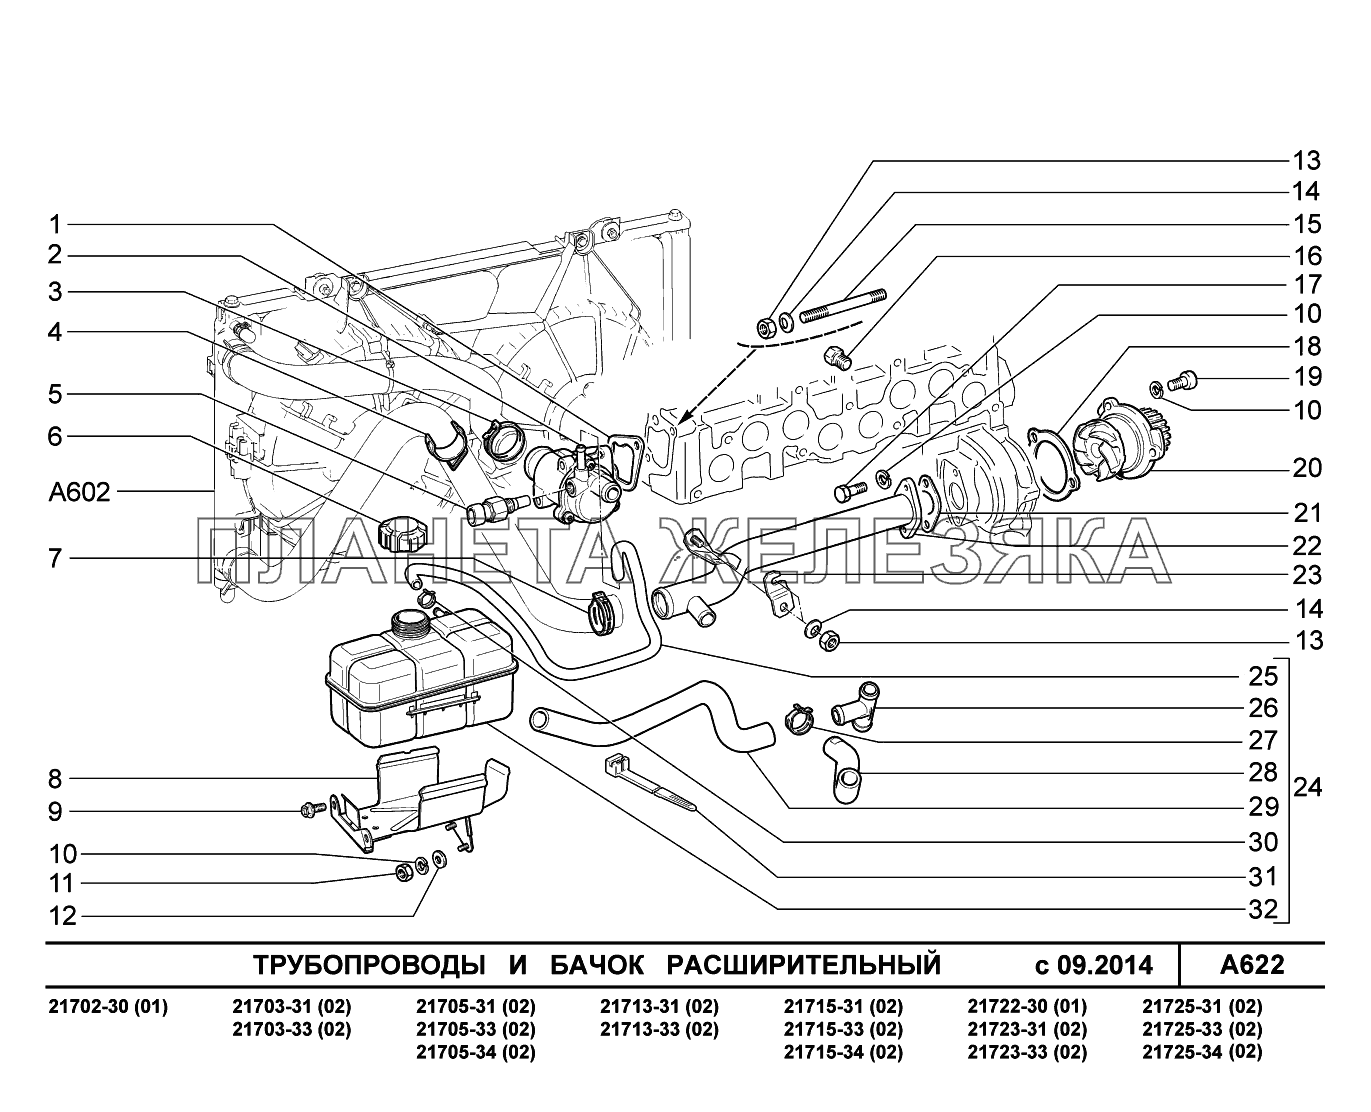 A622. Трубопроводы и бачок расширительный ВАЗ-2170 